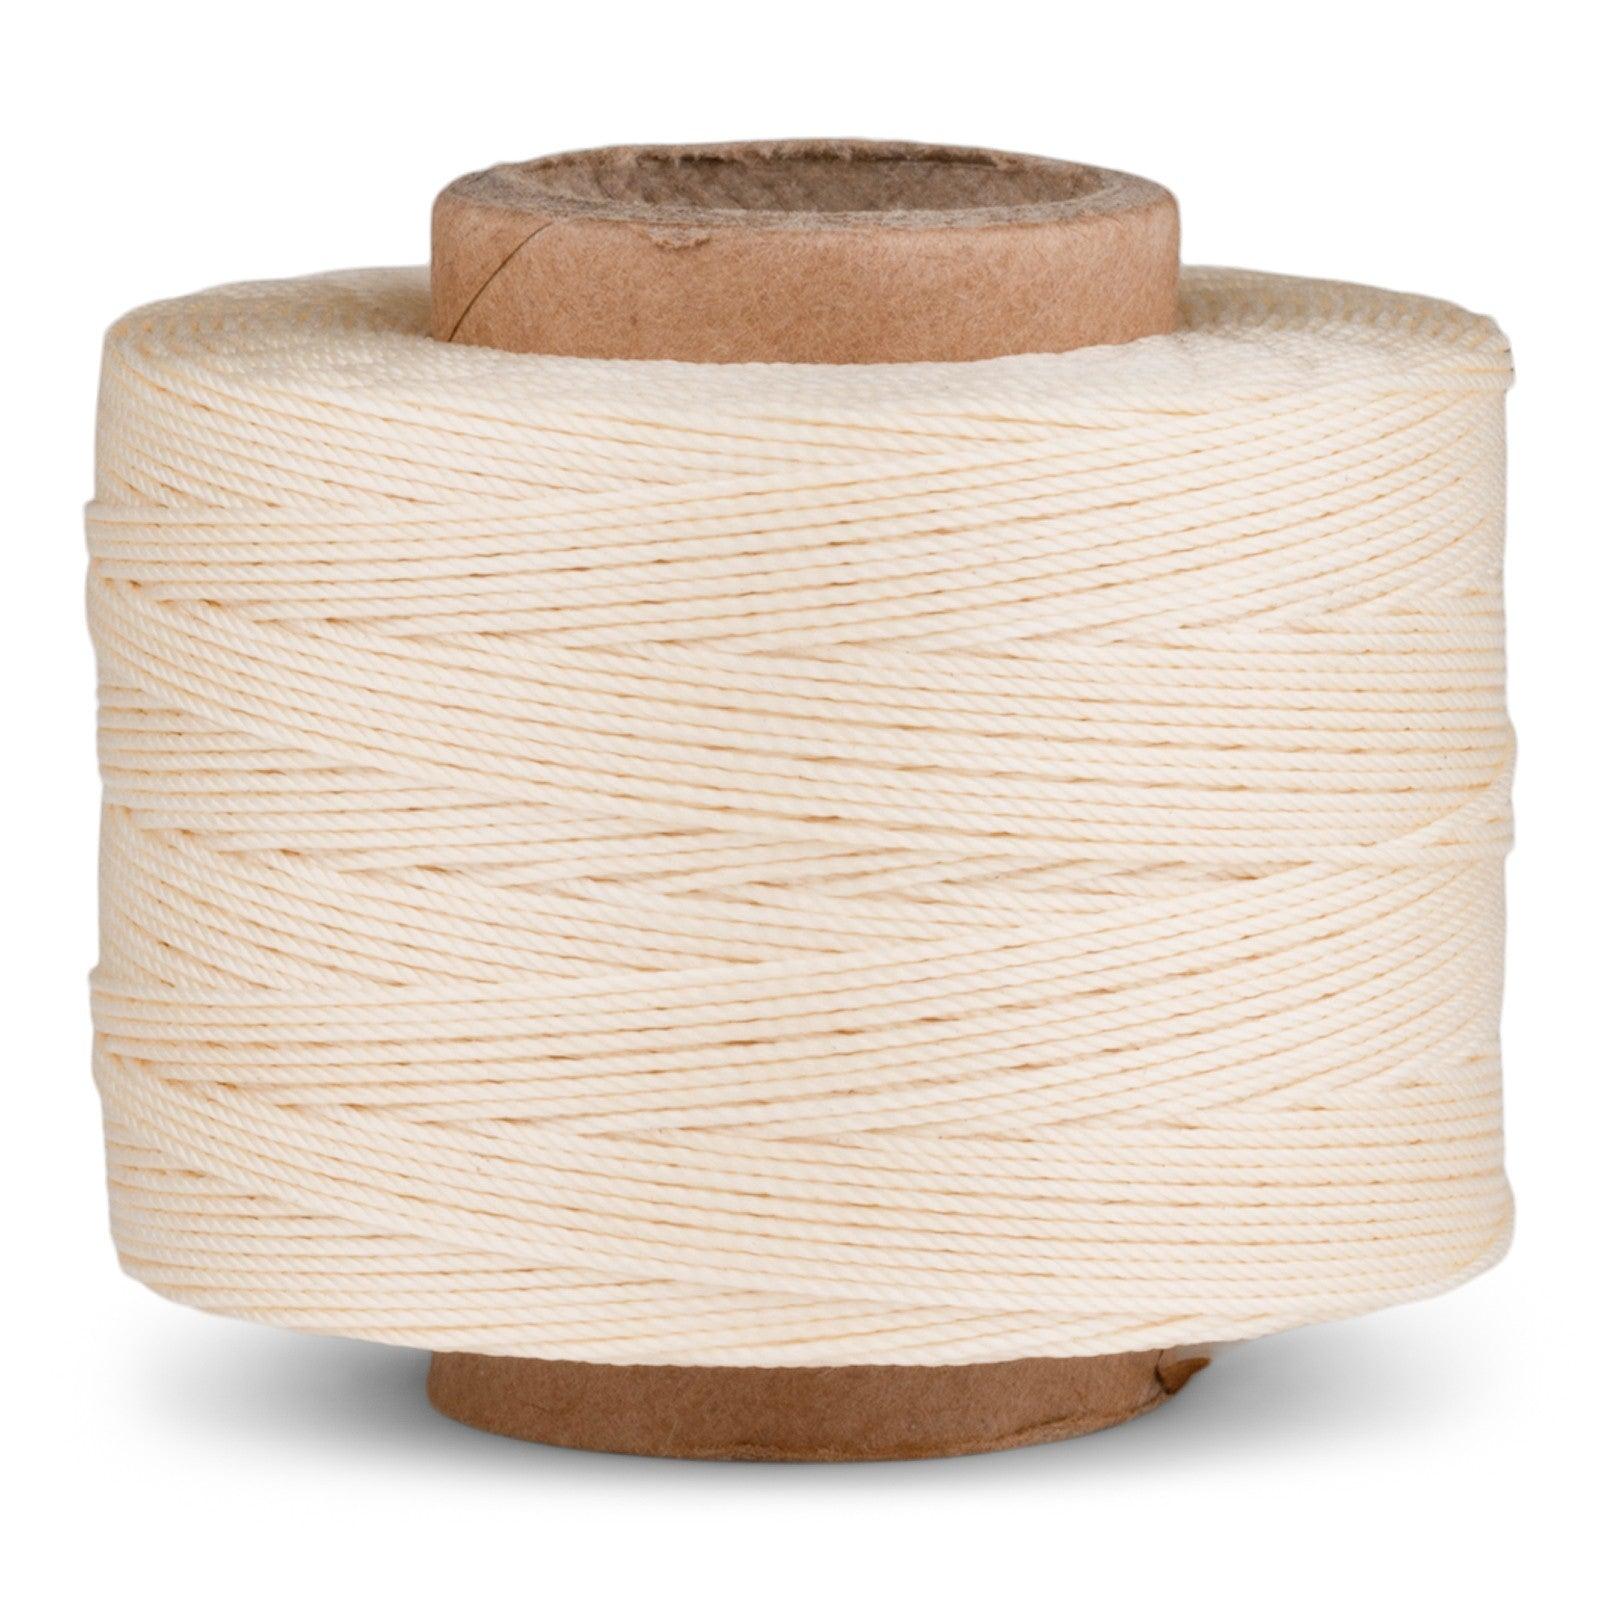 Heavy and Thick Nylon Thread Heavy Nylon Sewing Thread [Heavy and